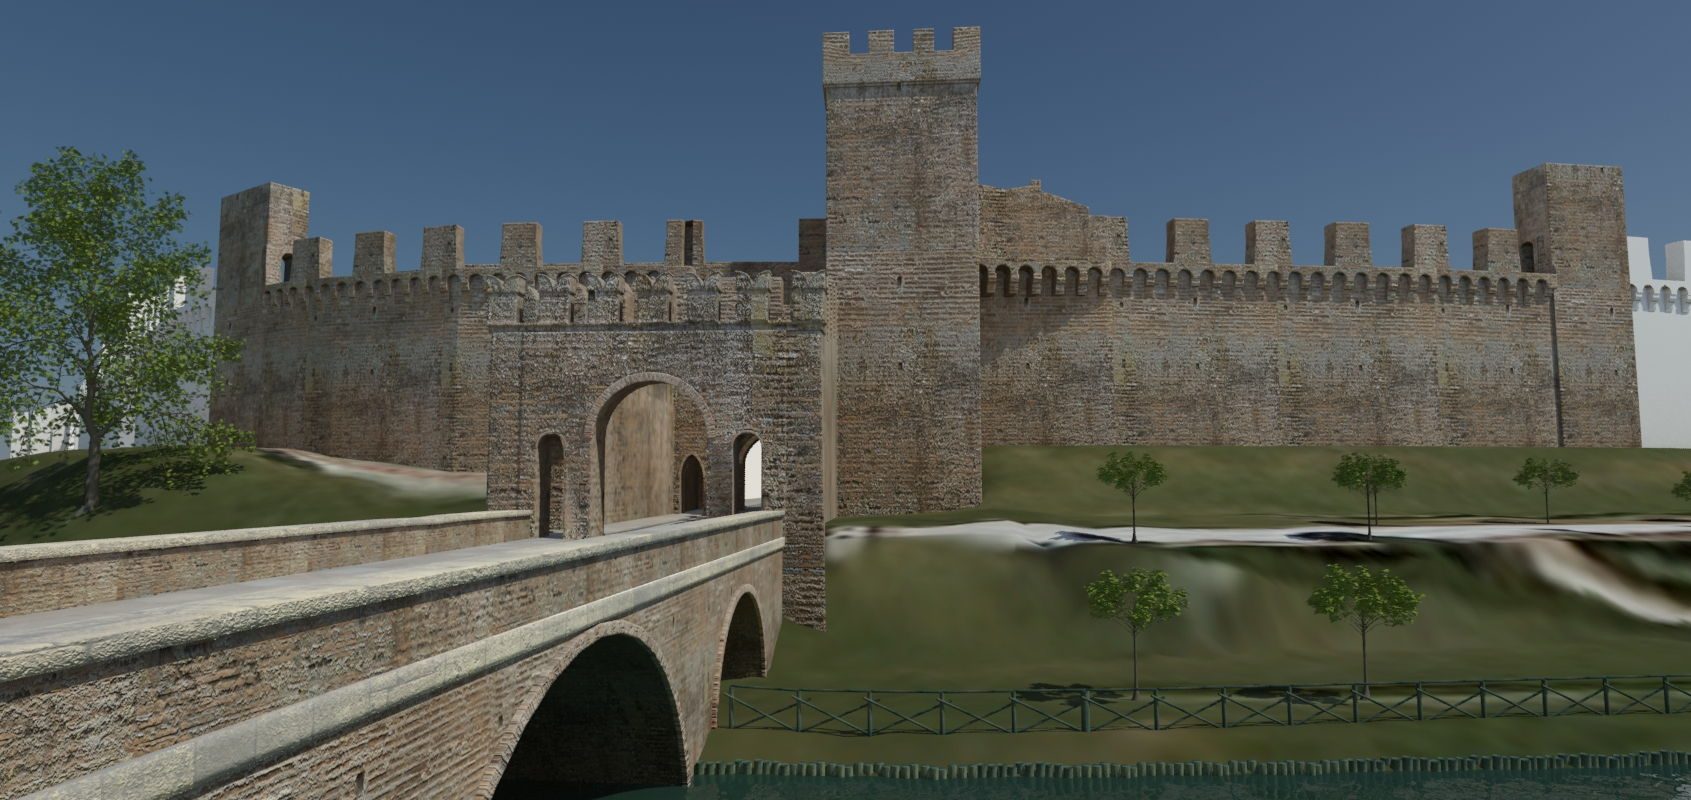 Permalink to: Cittadella – Le Mura – simulazione diurna